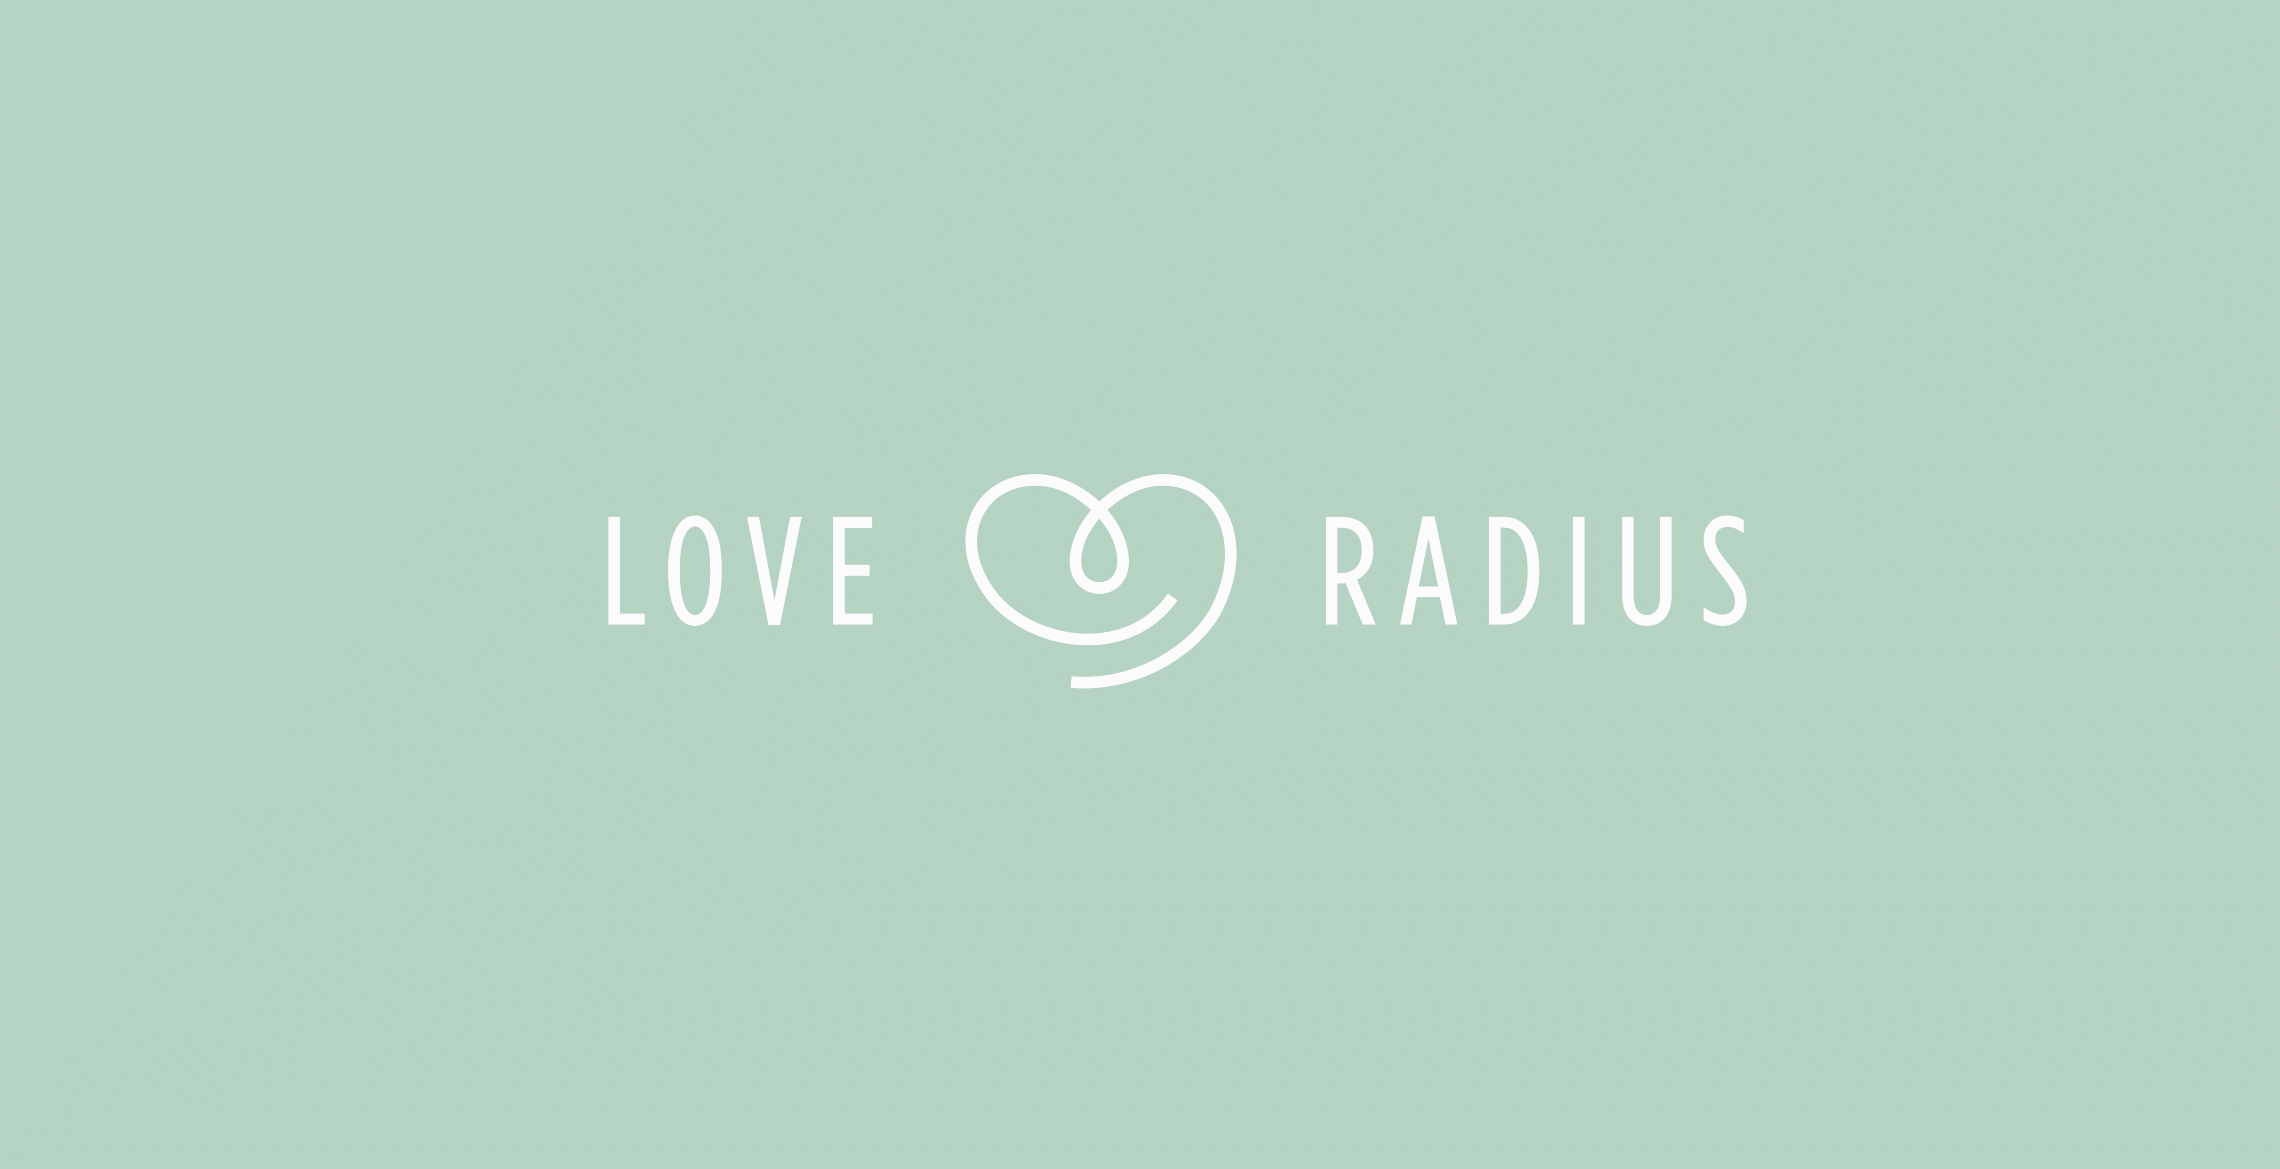 Love-hadius logo Childs